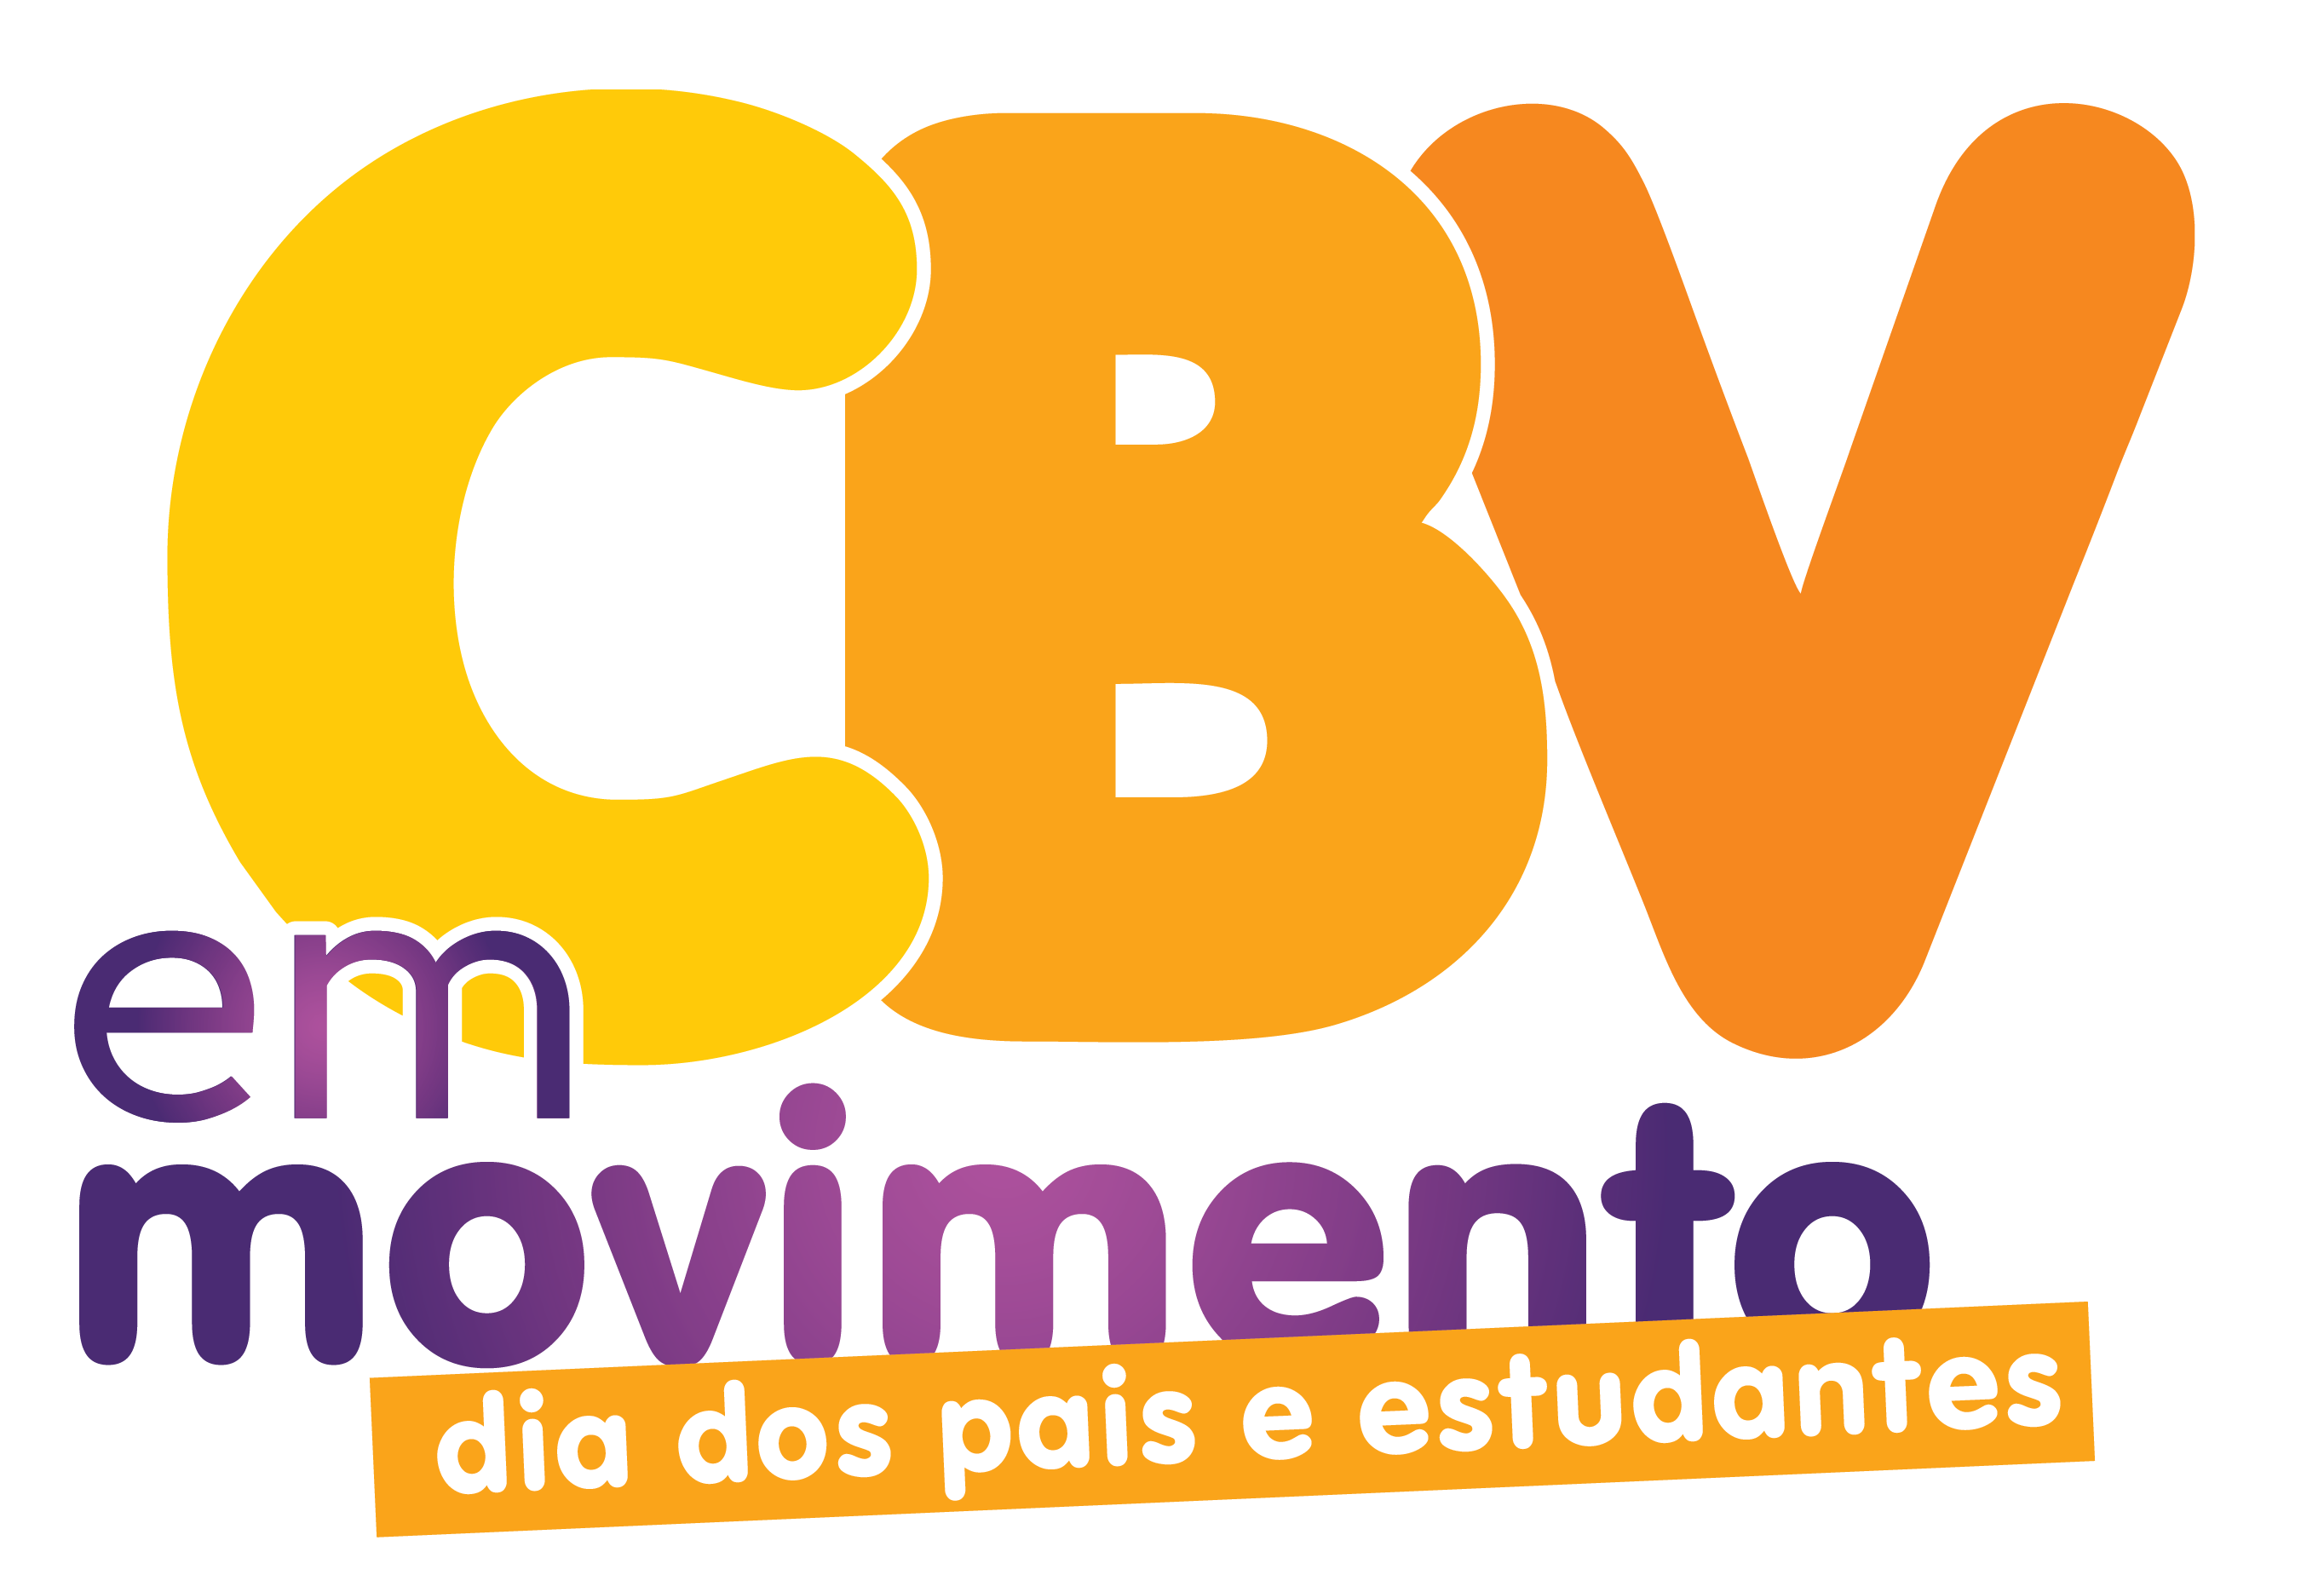 Campus Boa Vista reúne pais e estudantes em atividades recreativas   